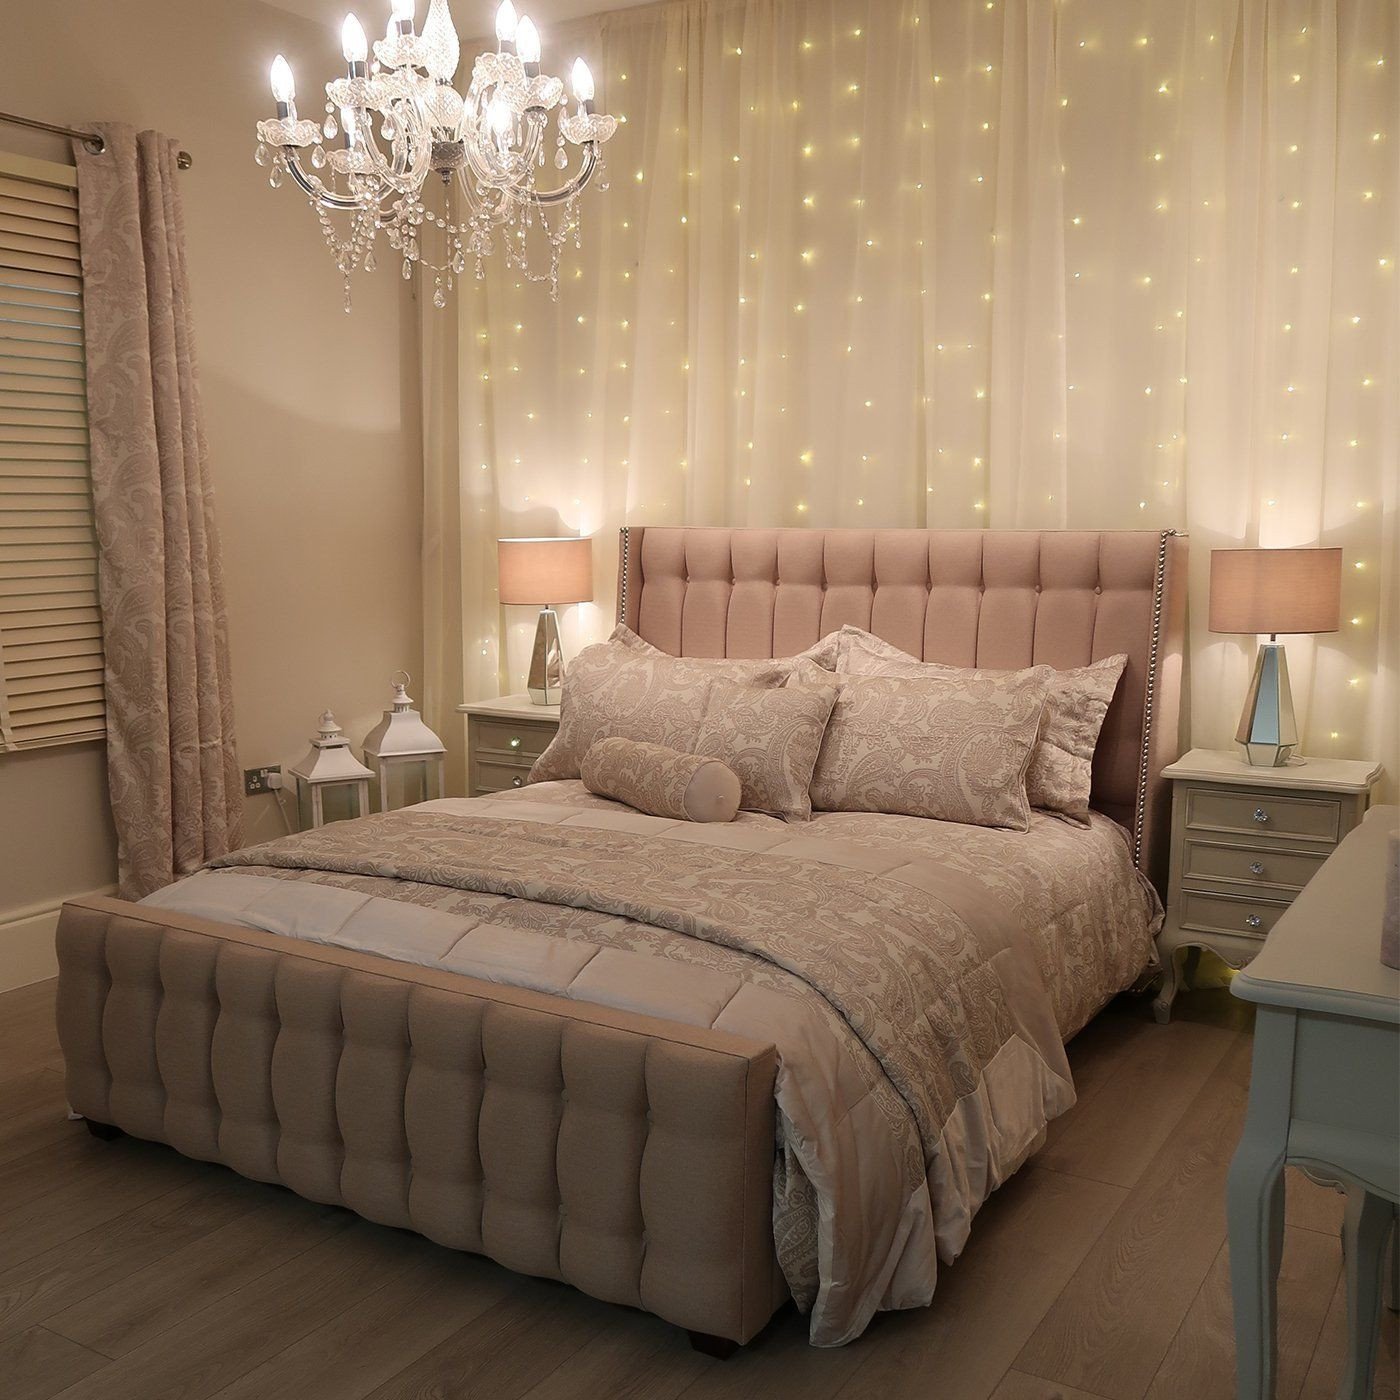 Led Lighting for Bedroom Luxury Led Fairy Light Curtain Kit